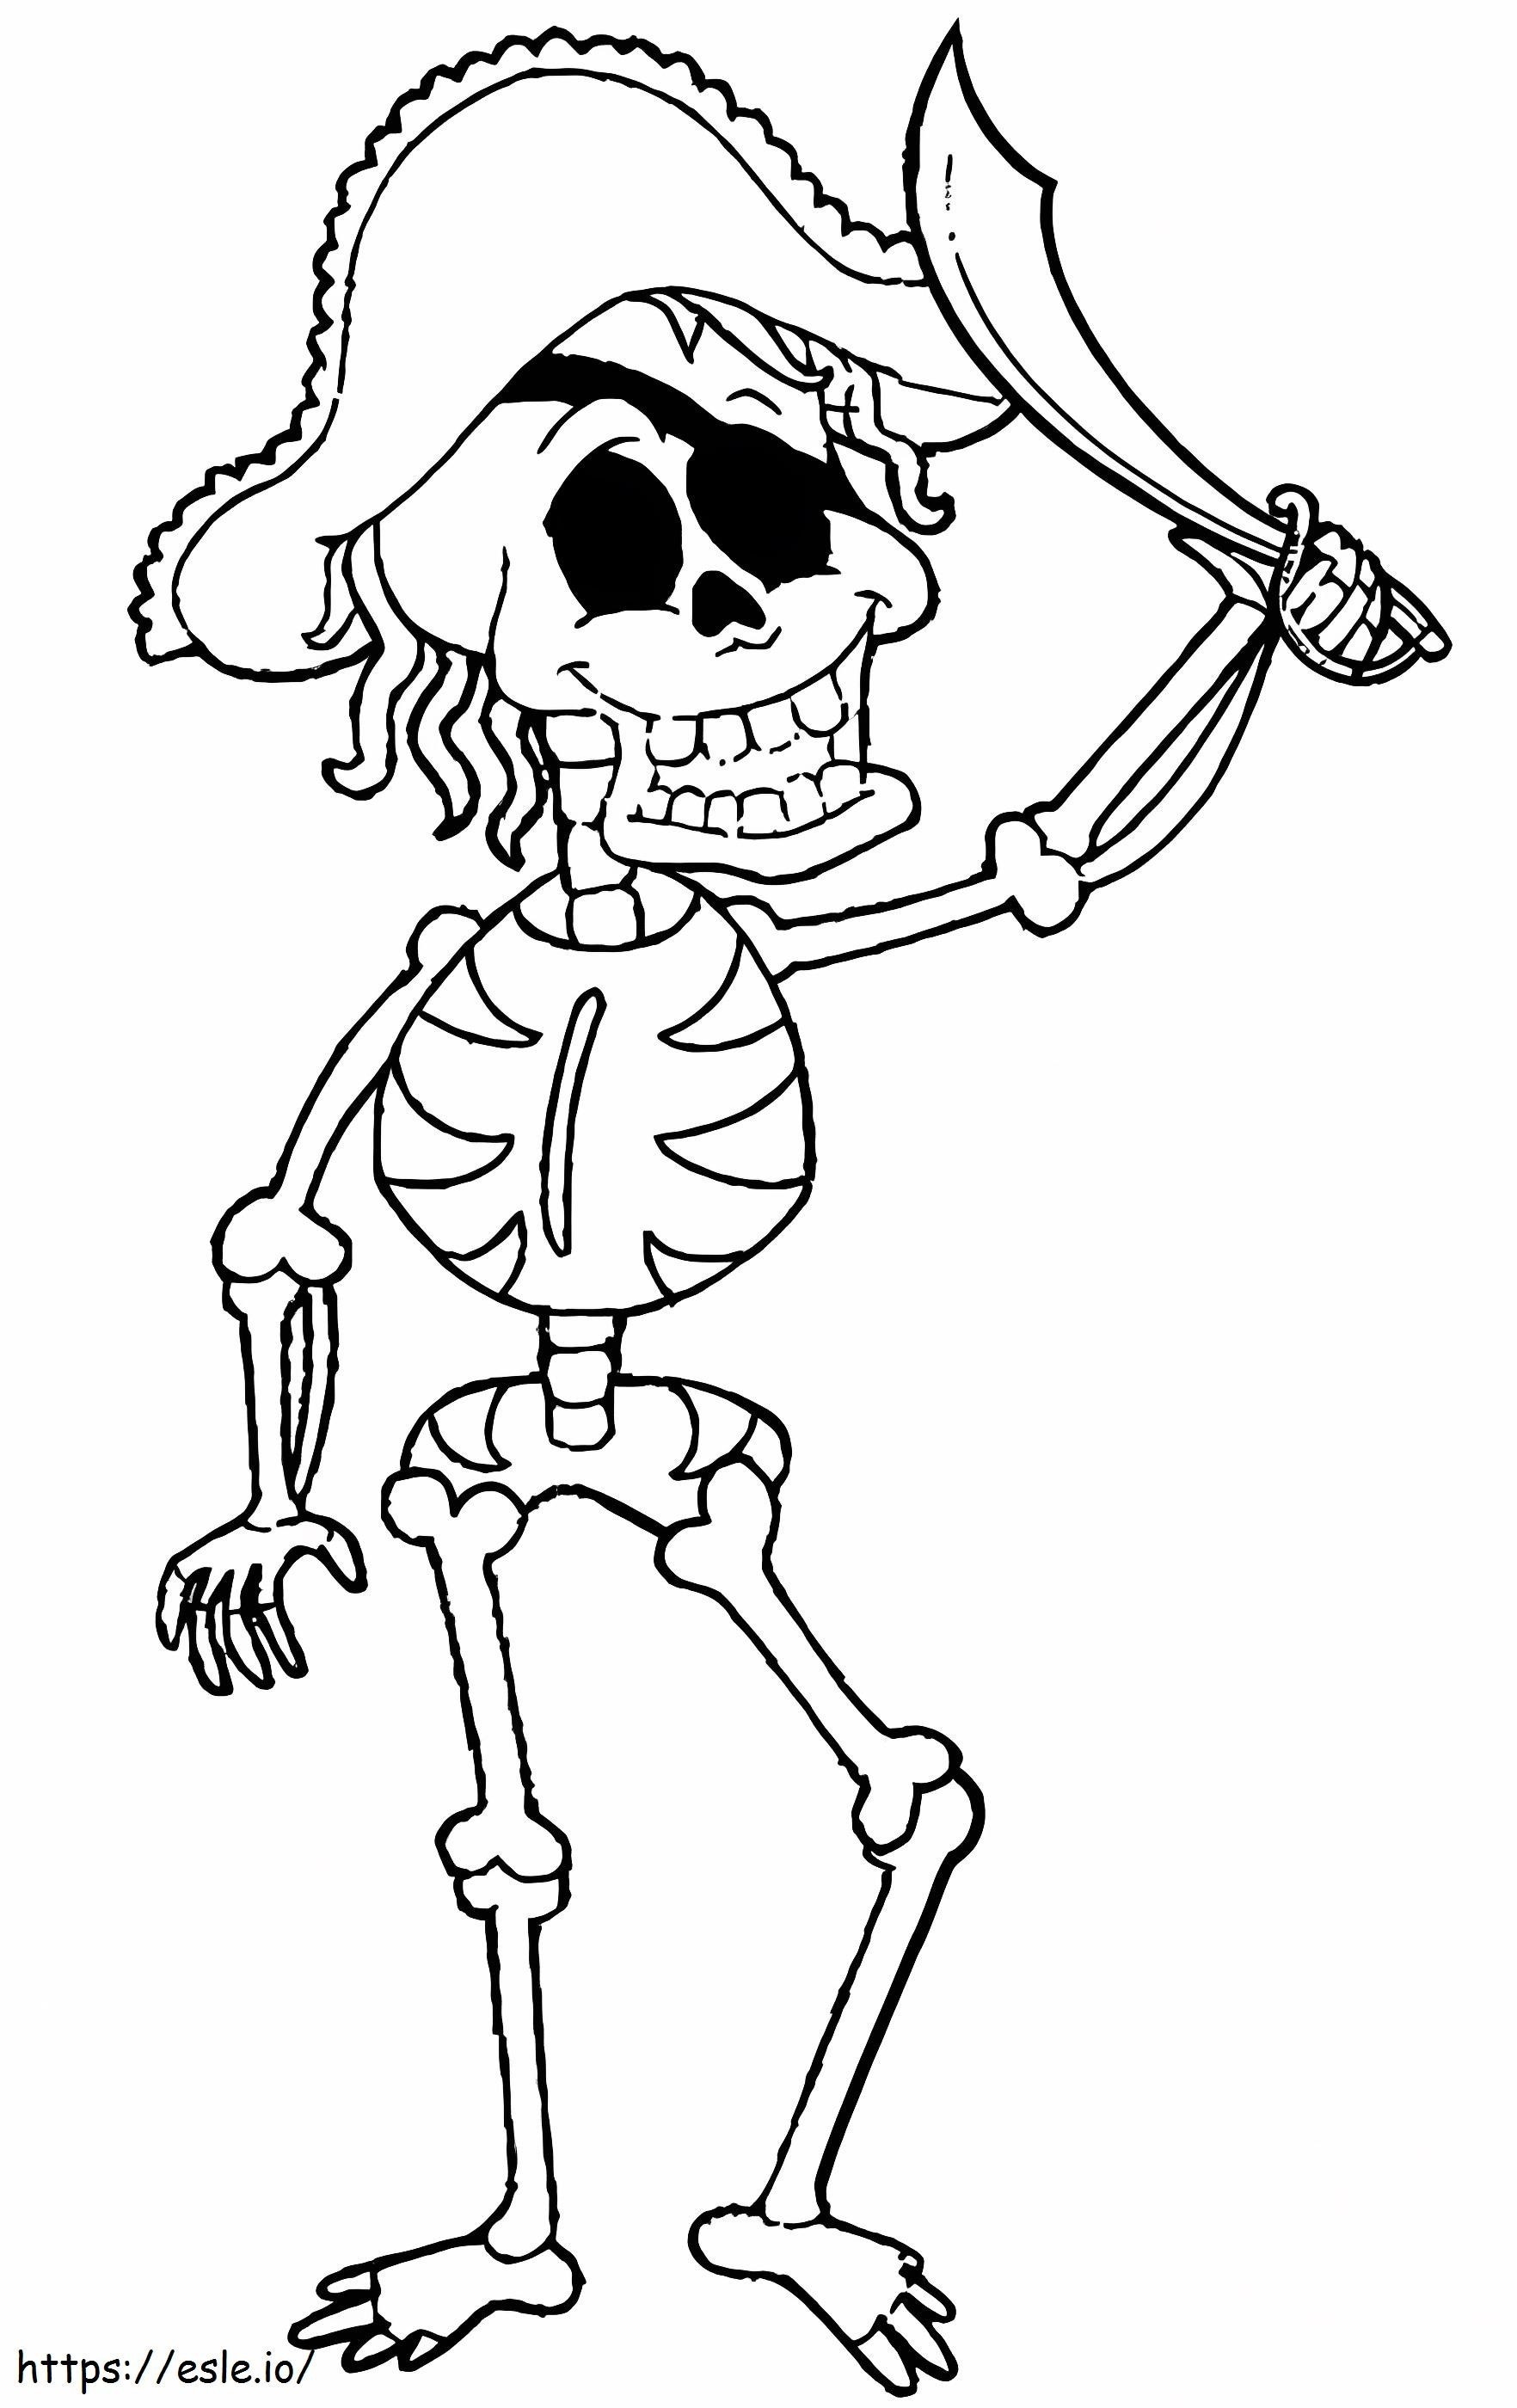 Zabawny szkielet pirata z mieczem kolorowanka